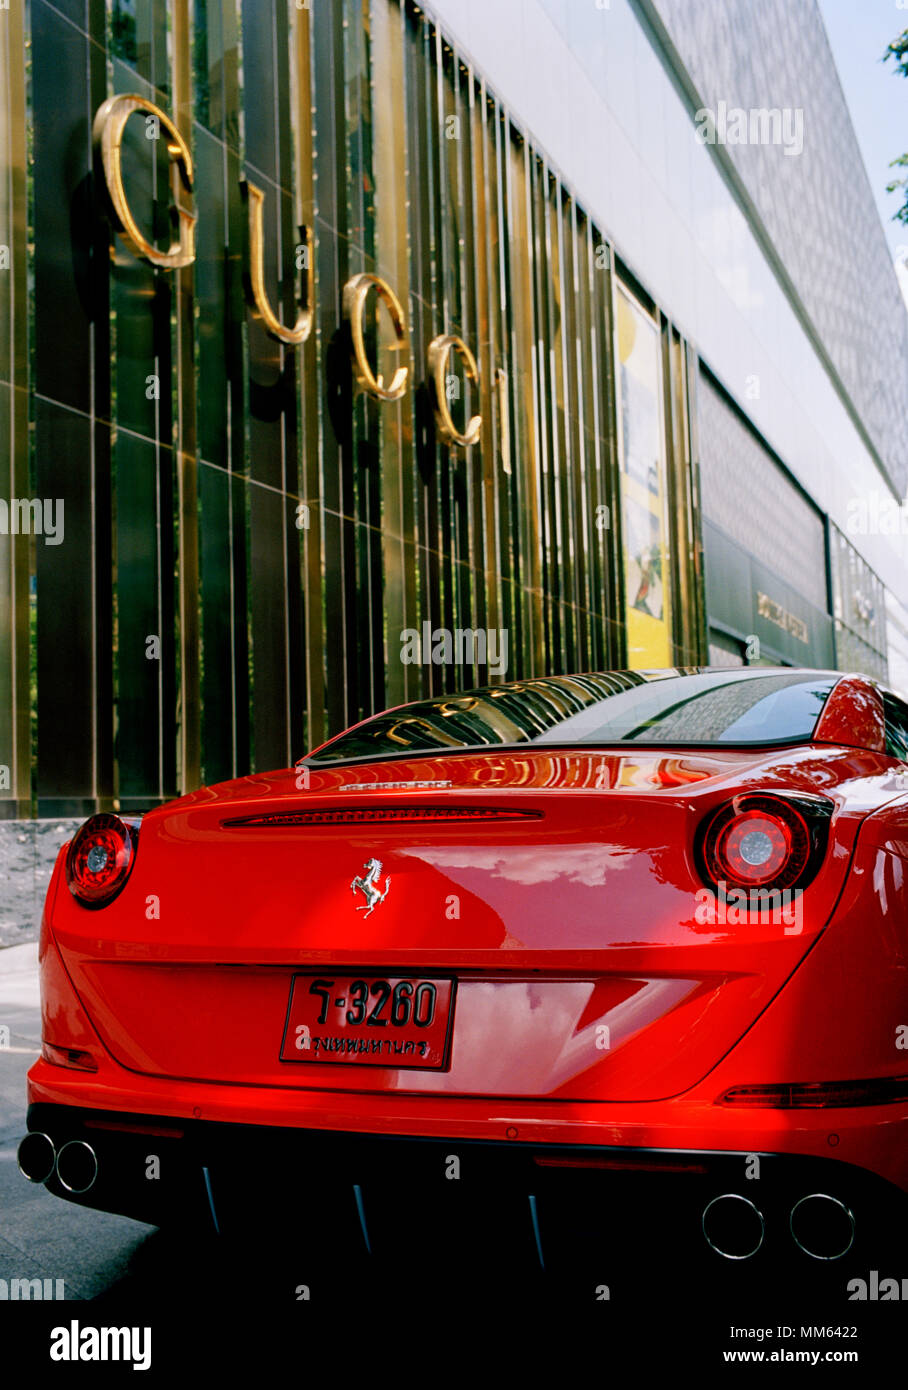 Transporte - clásico súper coche - Ferrari en la calle Sukhumvit de Bangkok en Tailandia en el sudeste de Asia, el Lejano Oriente. Gucci riqueza dinero ricos ricos Lifestyle Foto de stock